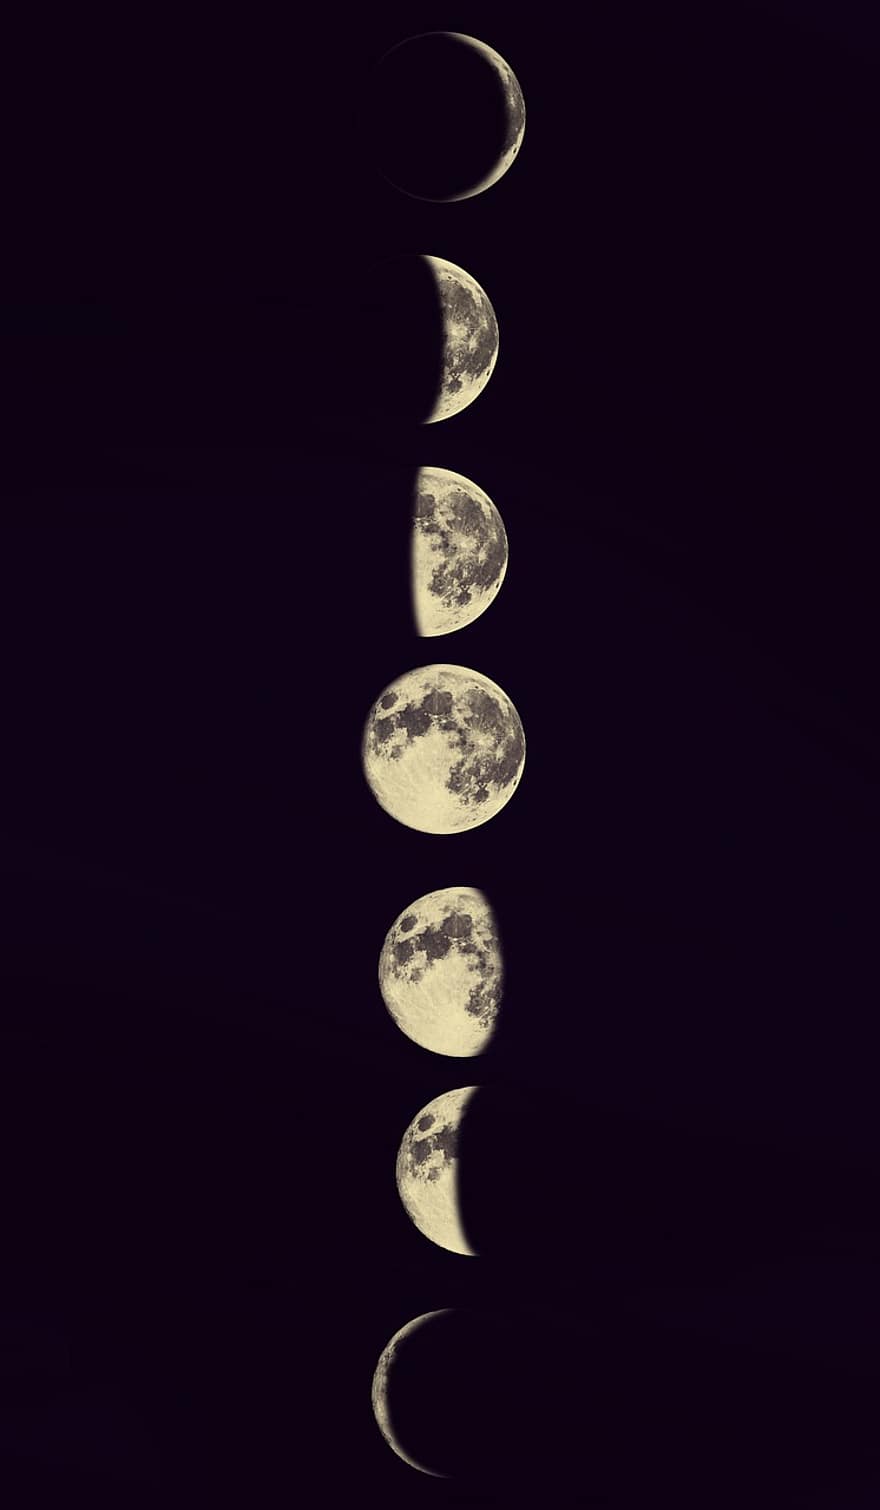 księżyc, faza Księżyca, noc, planeta, przestrzeń, tła, symbol, kula, ilustracja, błyszczący, Mapa świata